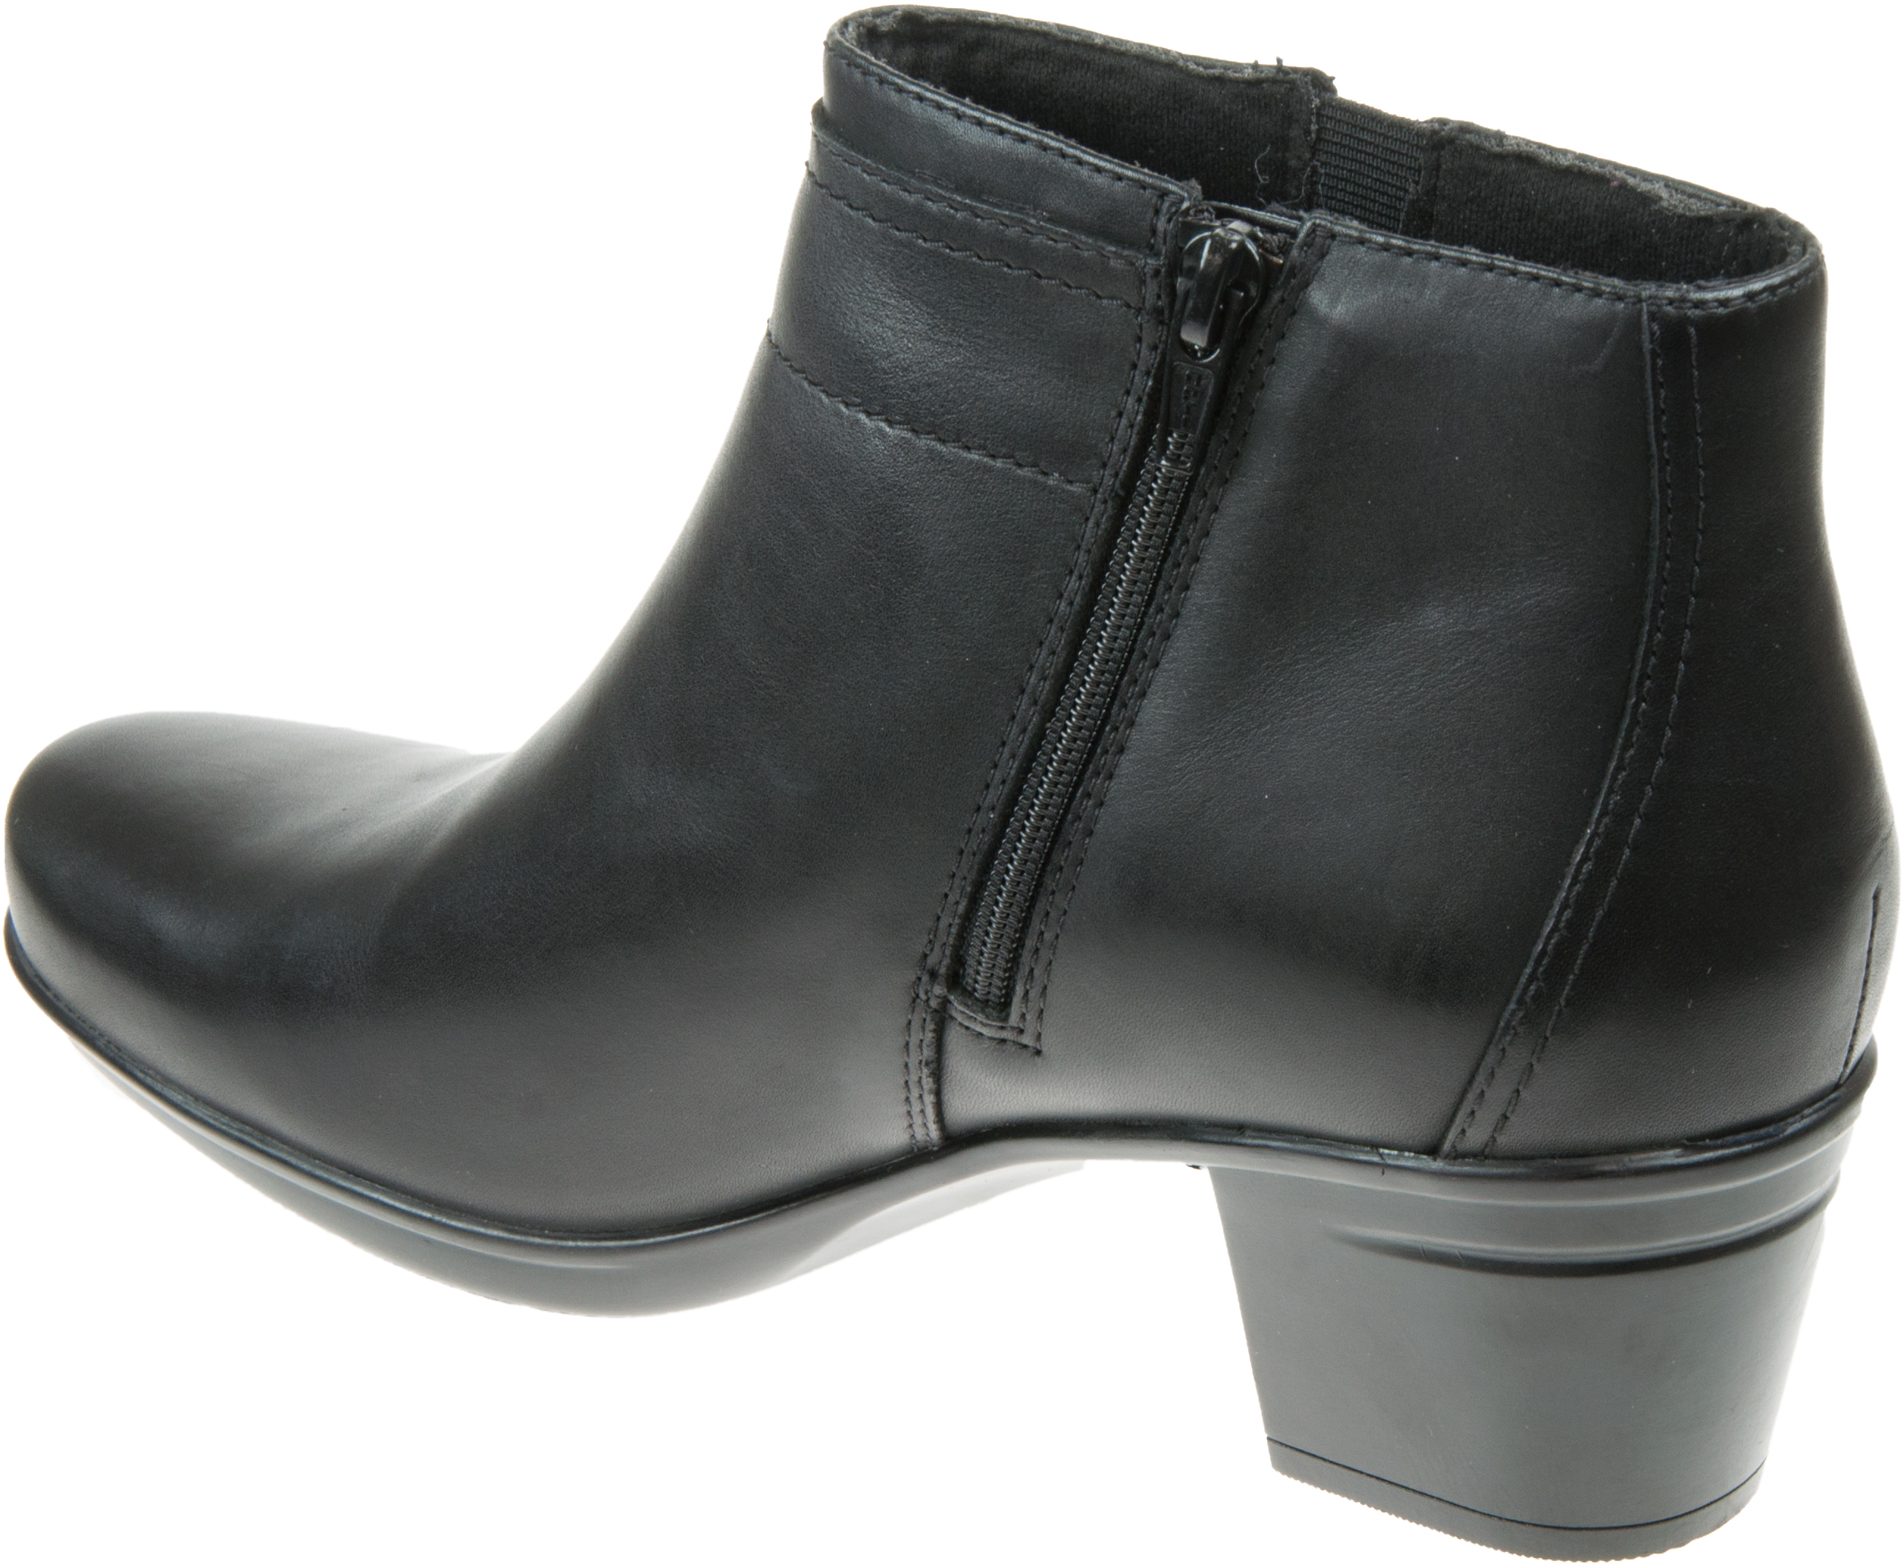 Clarks Emslie Parula Black Leather 26147119 - Ankle Boots - Humphries Shoes